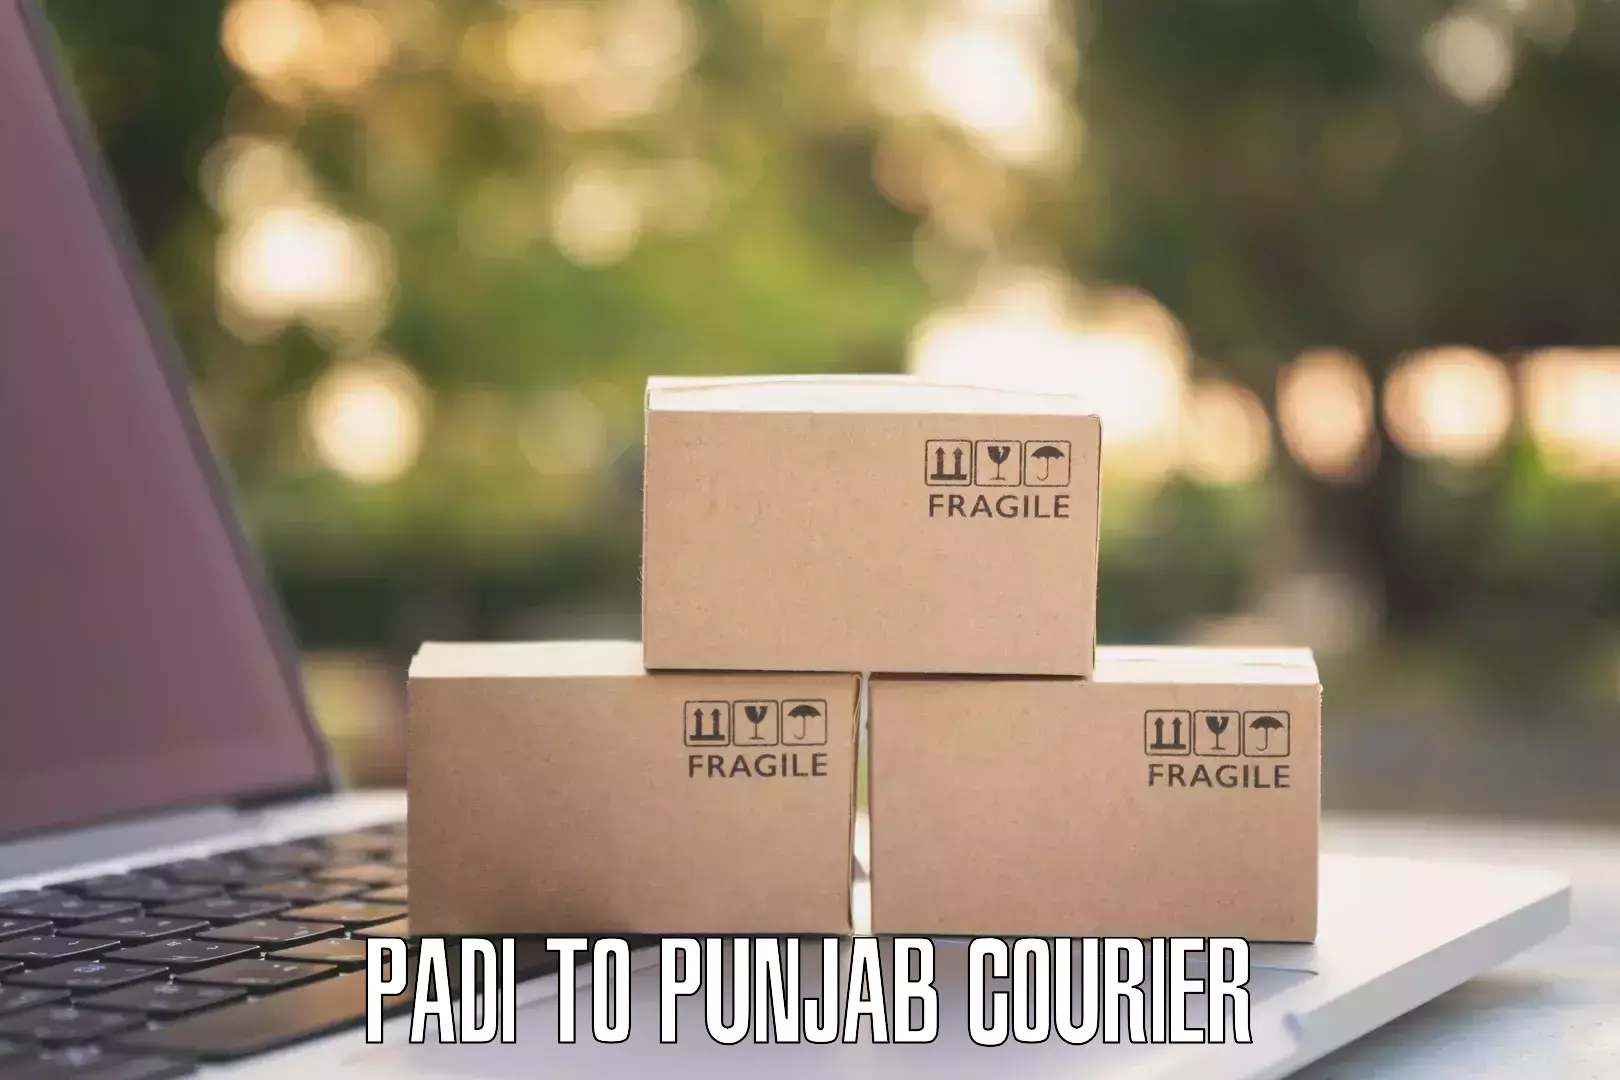 Express mail solutions Padi to Punjab